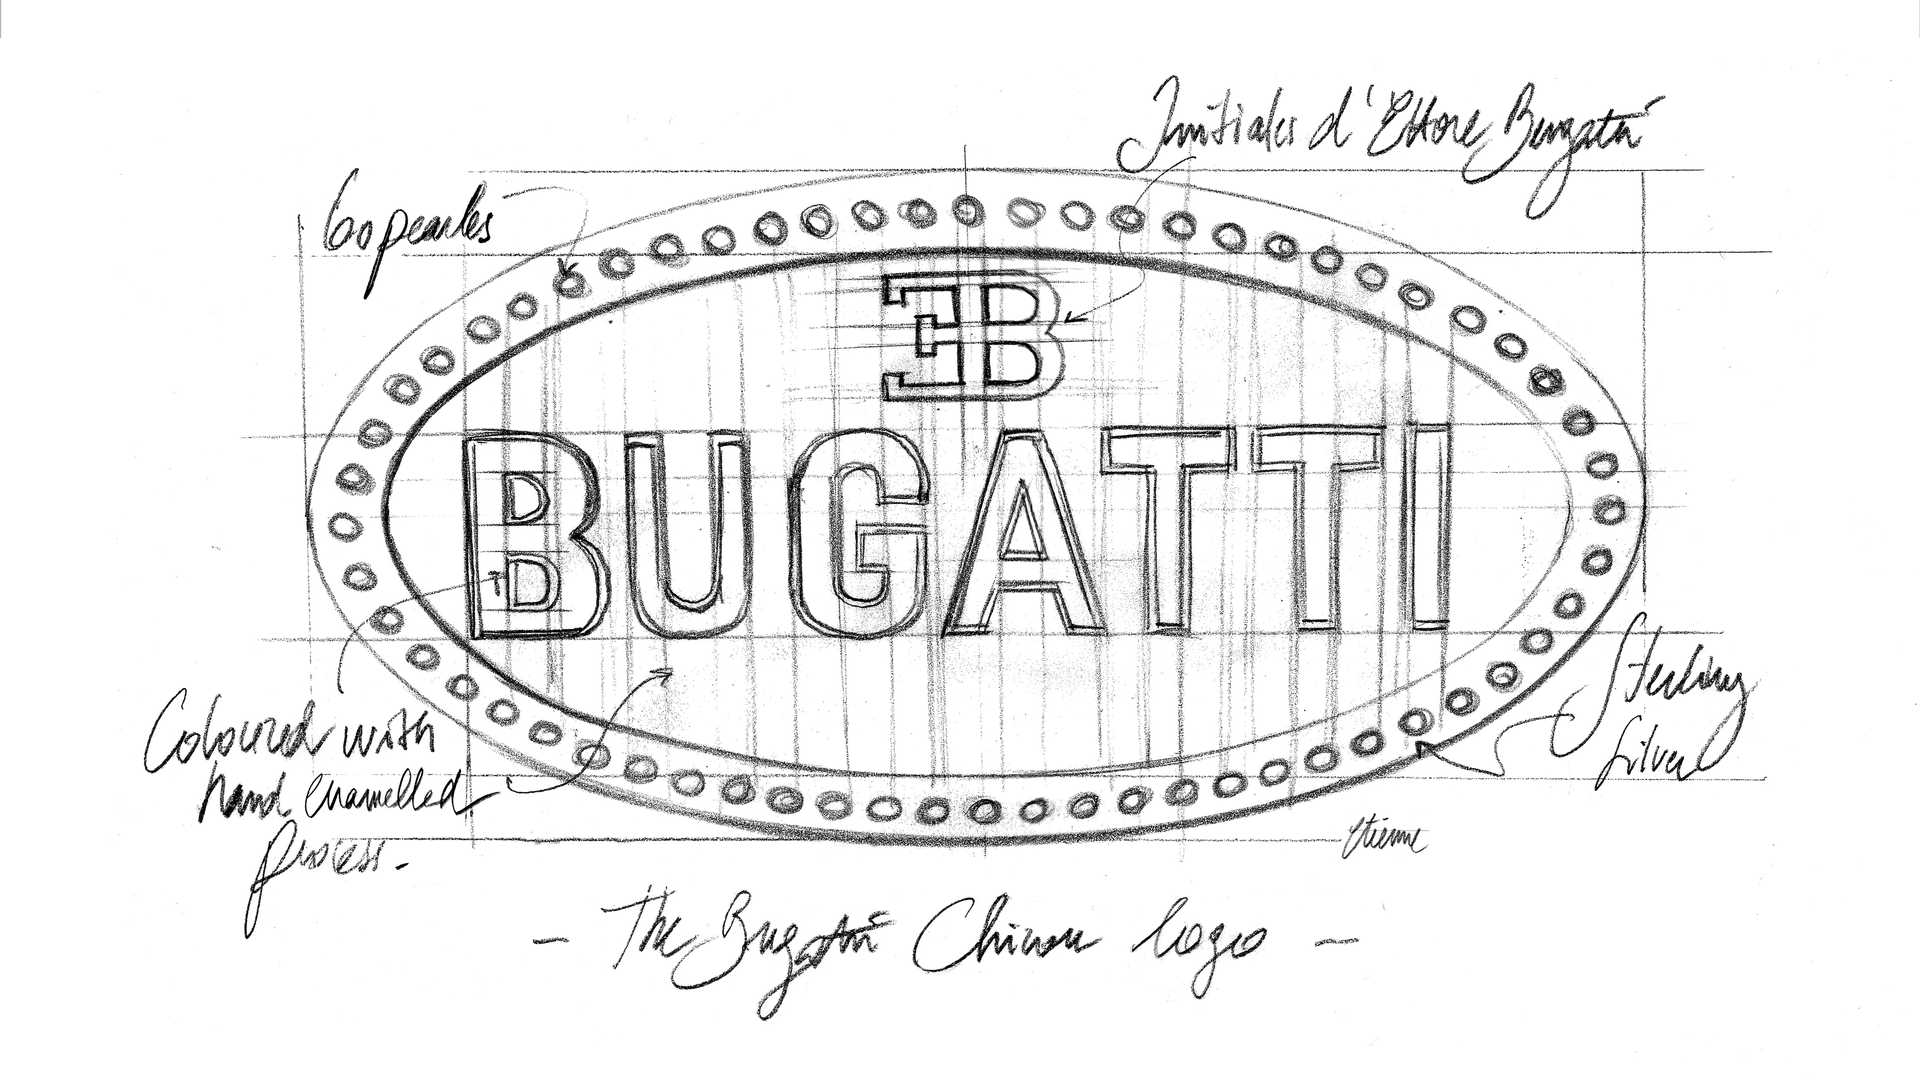 10 điều về huy hiệu Bugatti mà bạn chưa biết